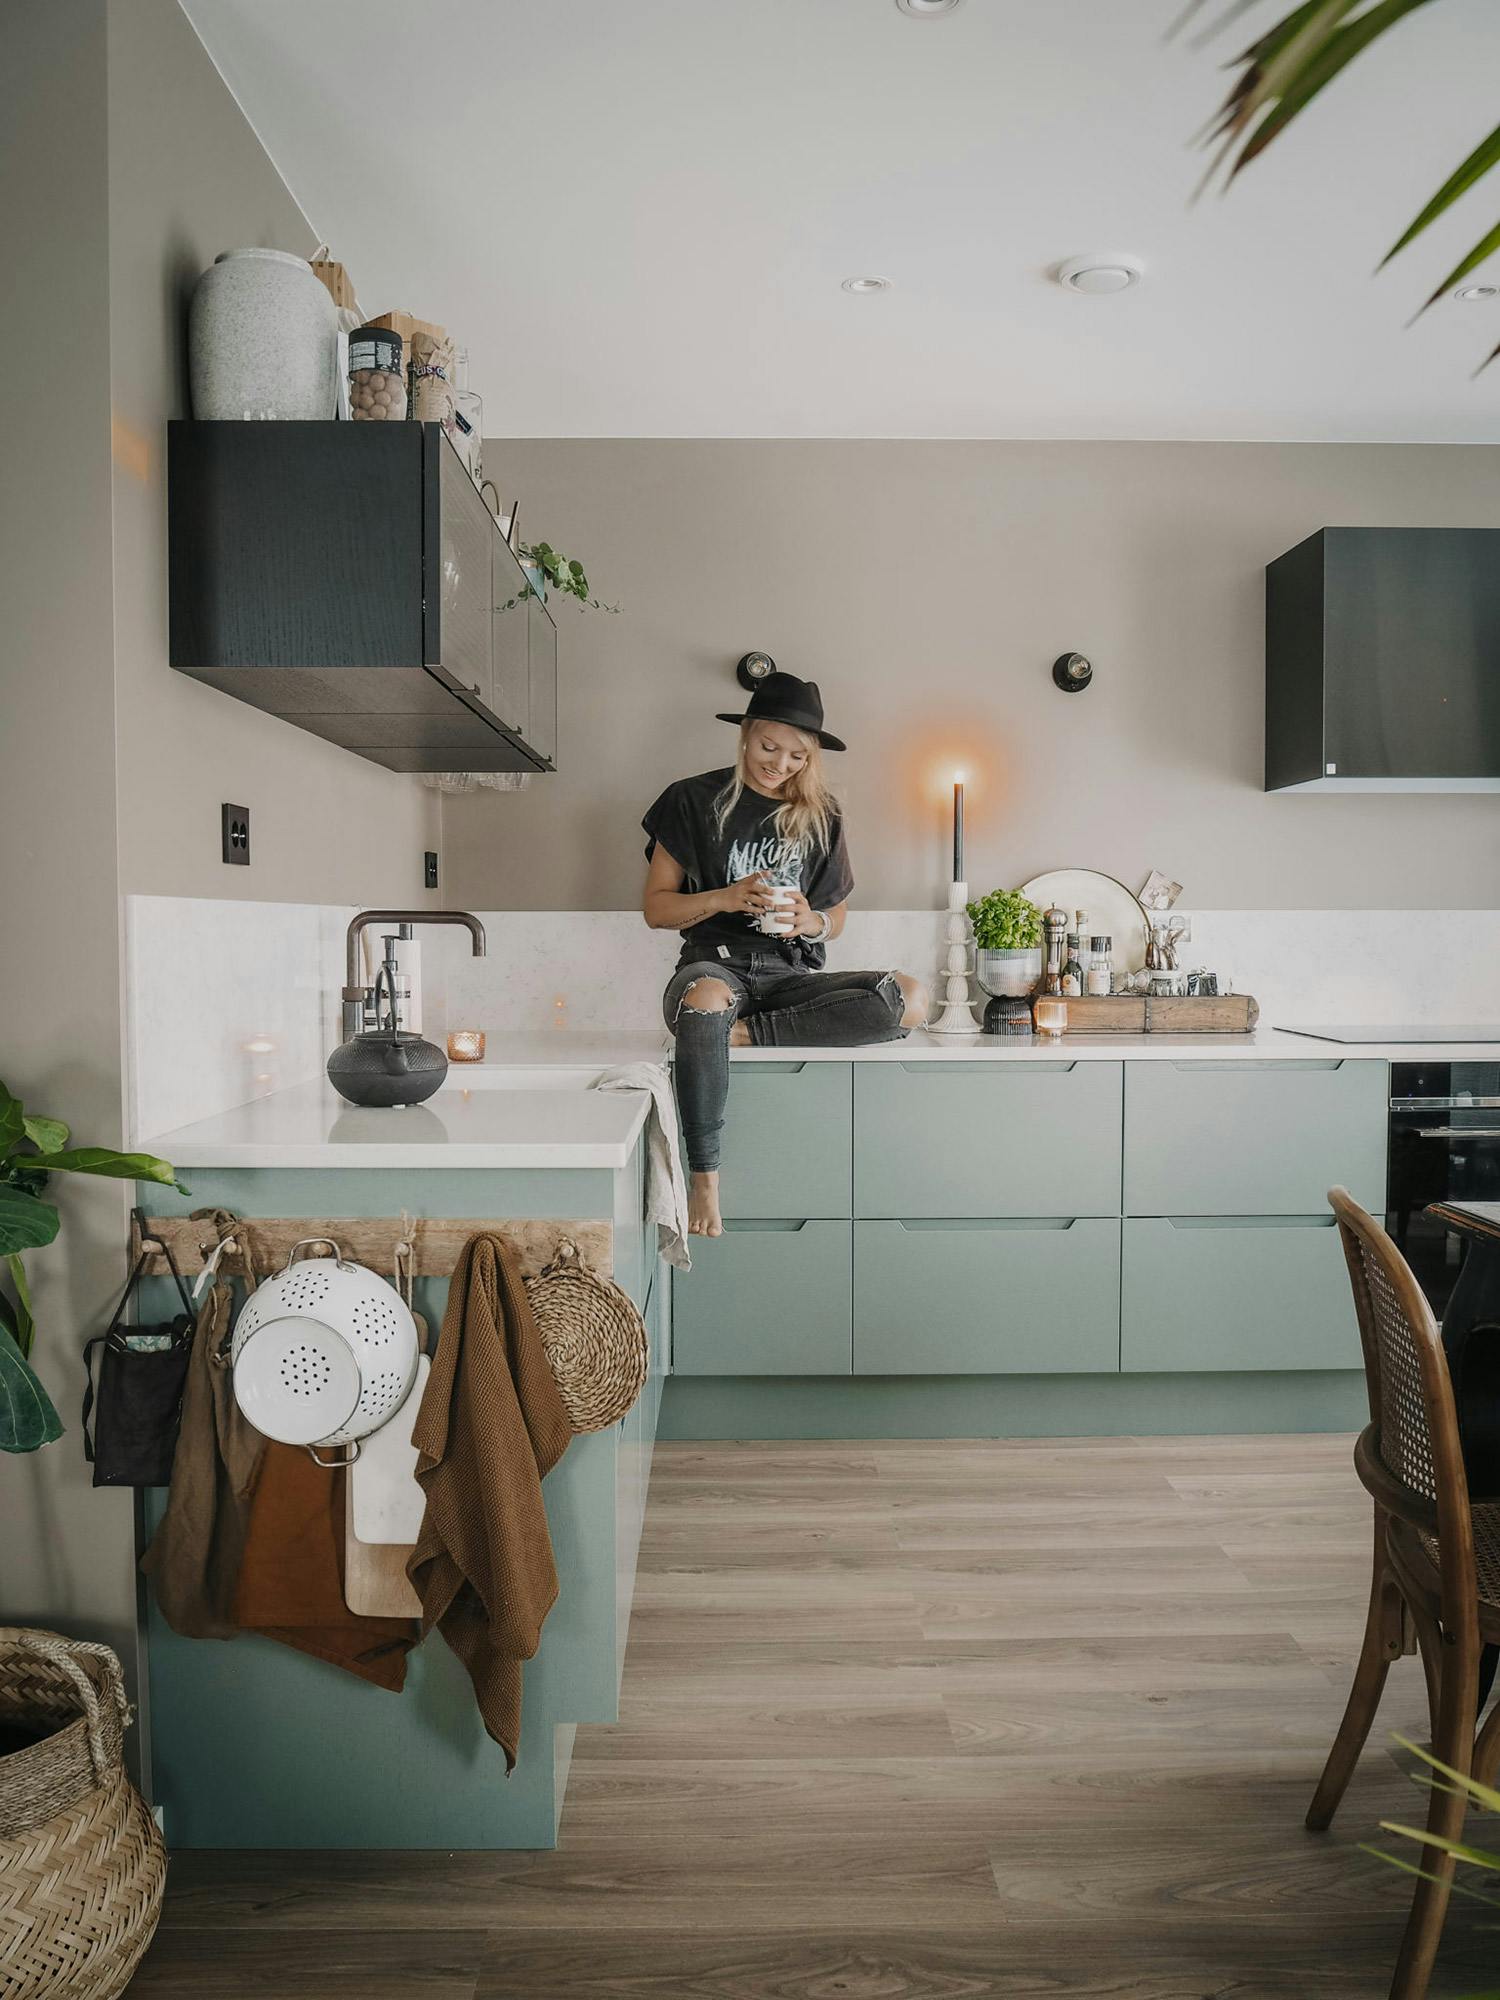 Numero immagine 32 della sezione corrente di {{The trendy, super-photogenic kitchen with the most likes on Instagram}} di Cosentino Italia